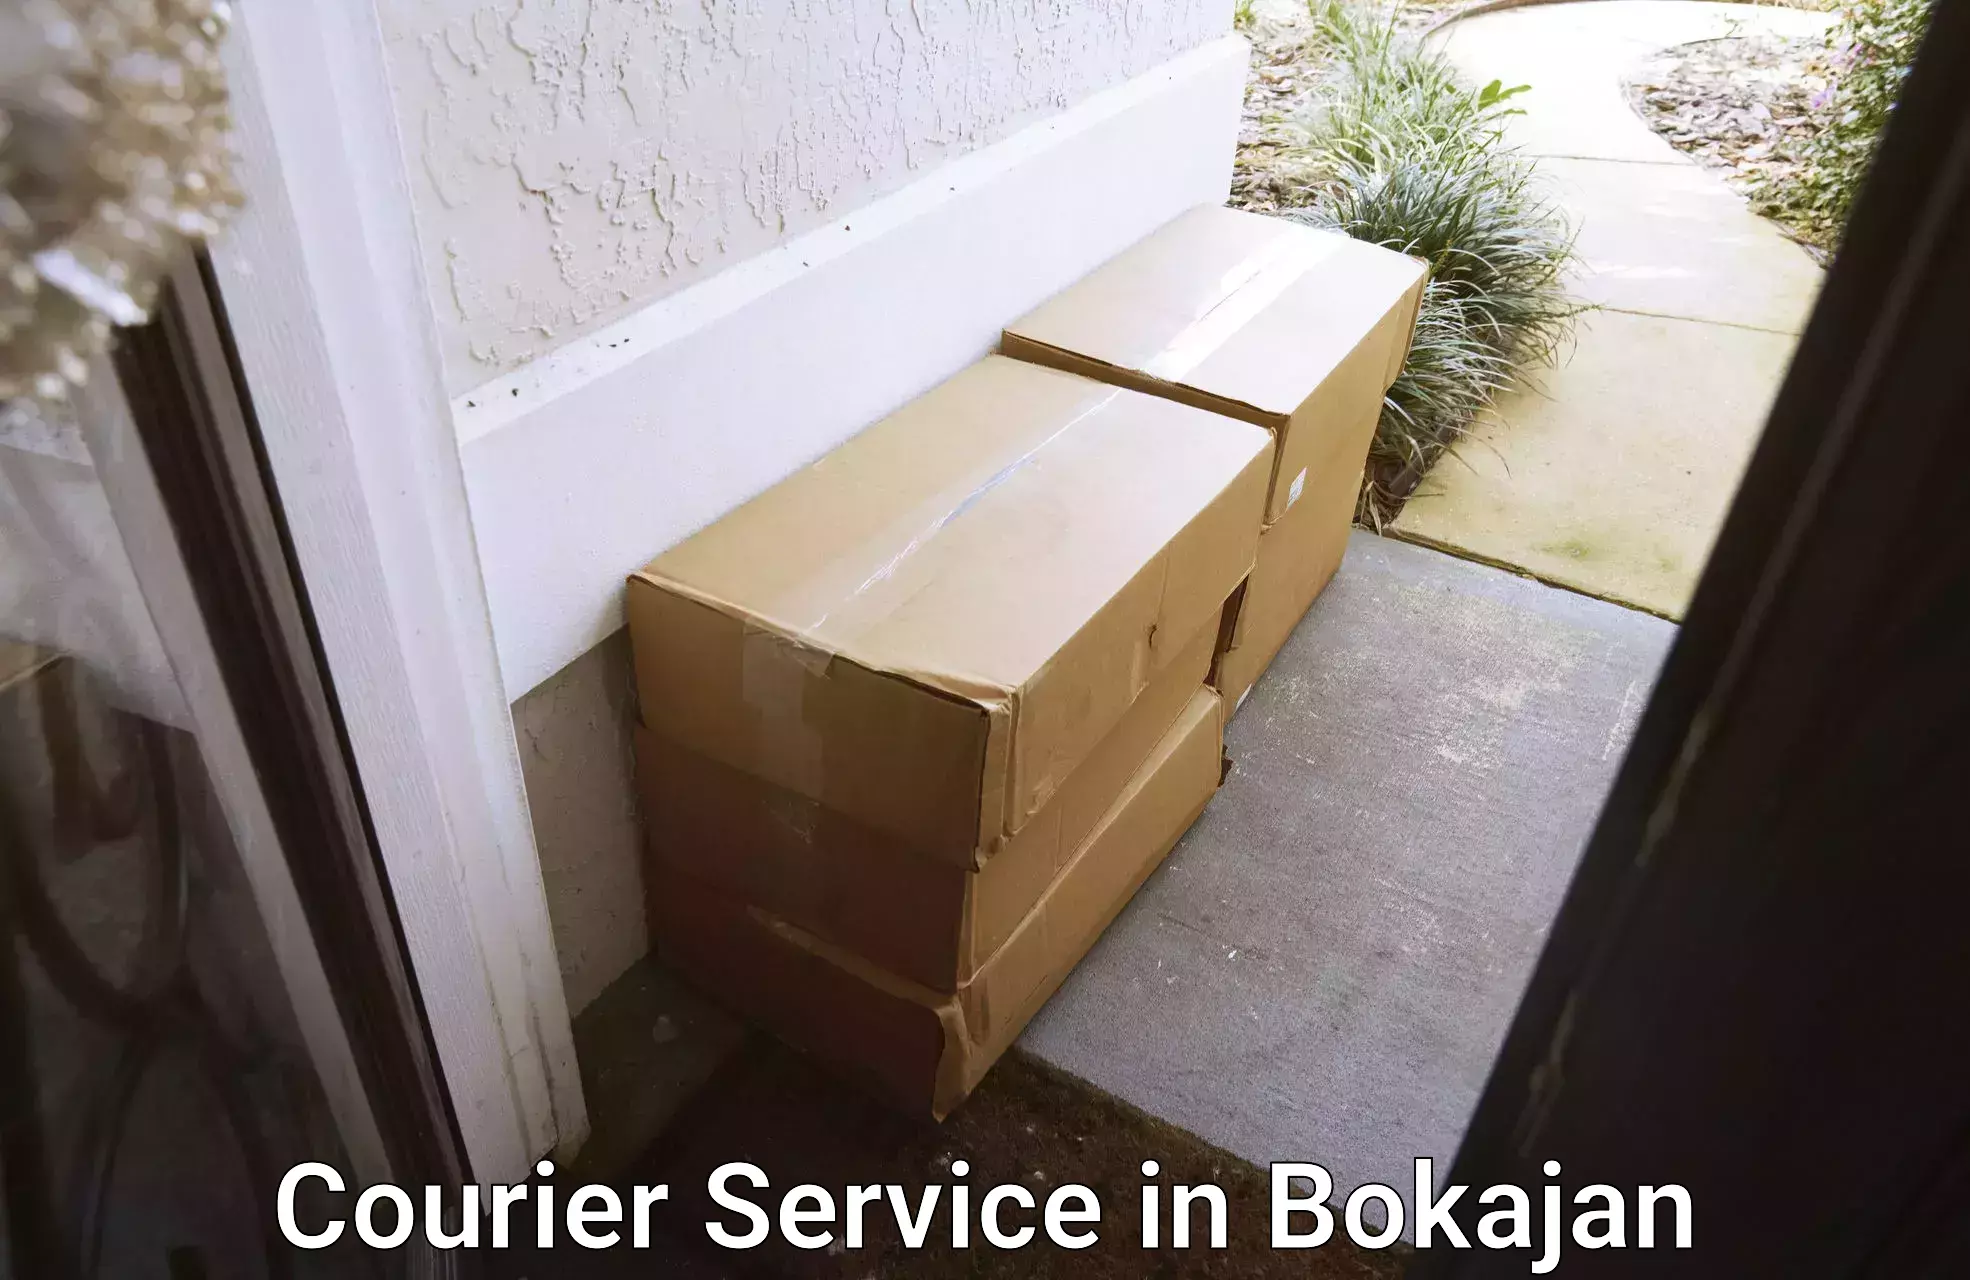 Domestic courier in Bokajan